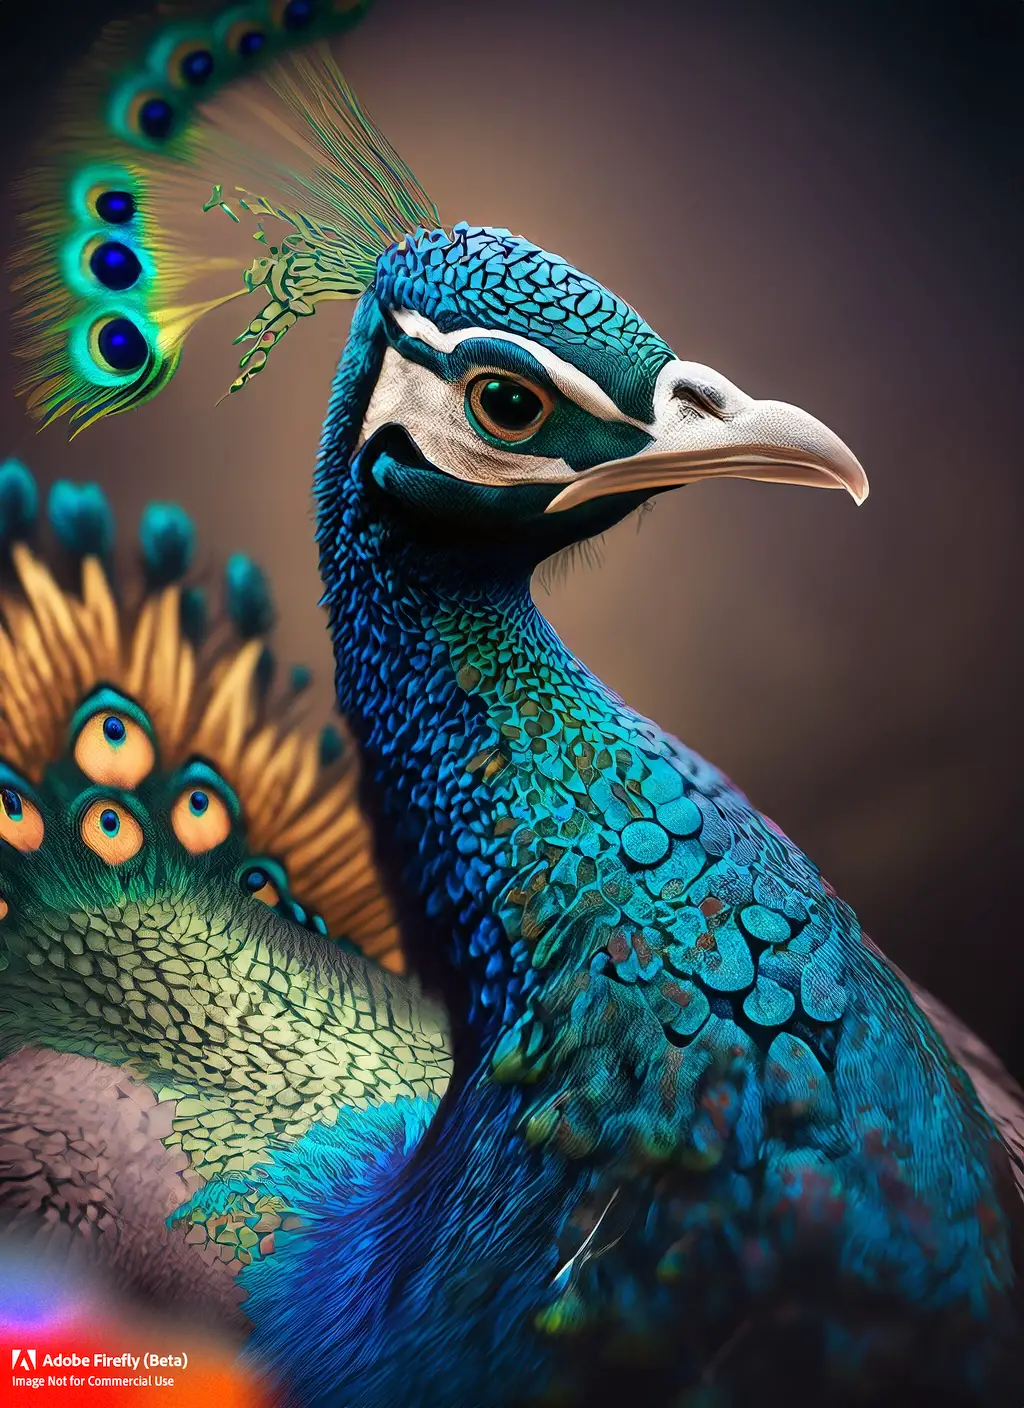 A peacock face closeup